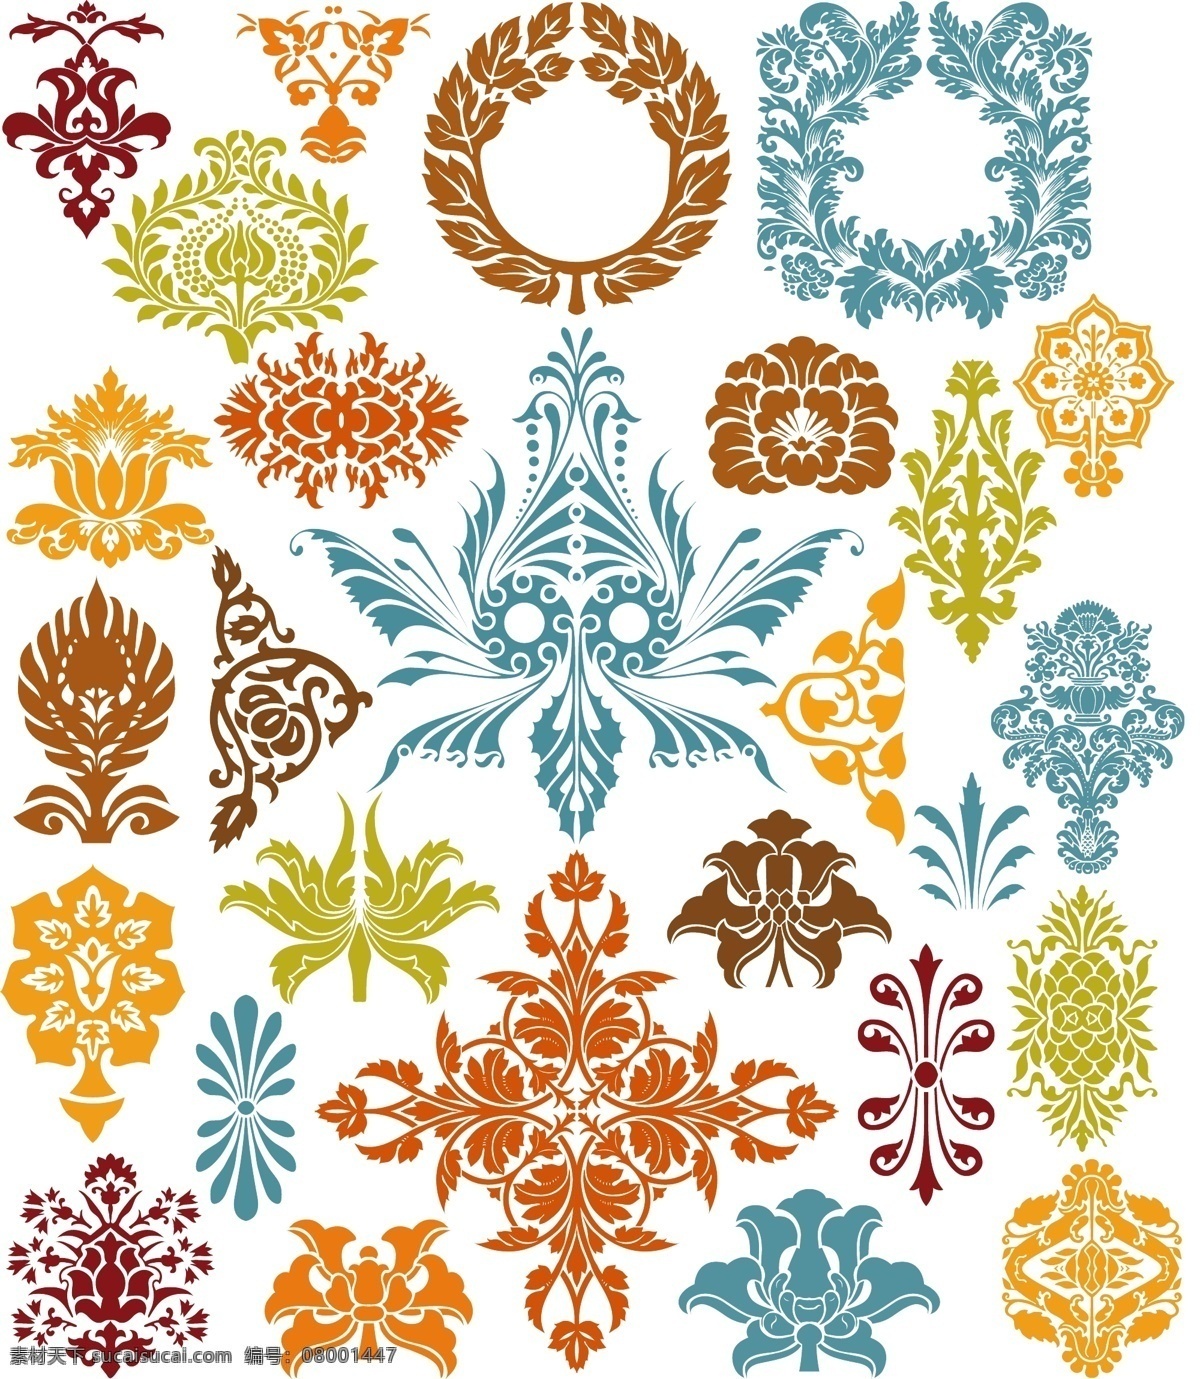 装饰 元素 彩色 橄榄枝 花纹 模板 设计稿 素材元素 图案 叶子 源文件 矢量图